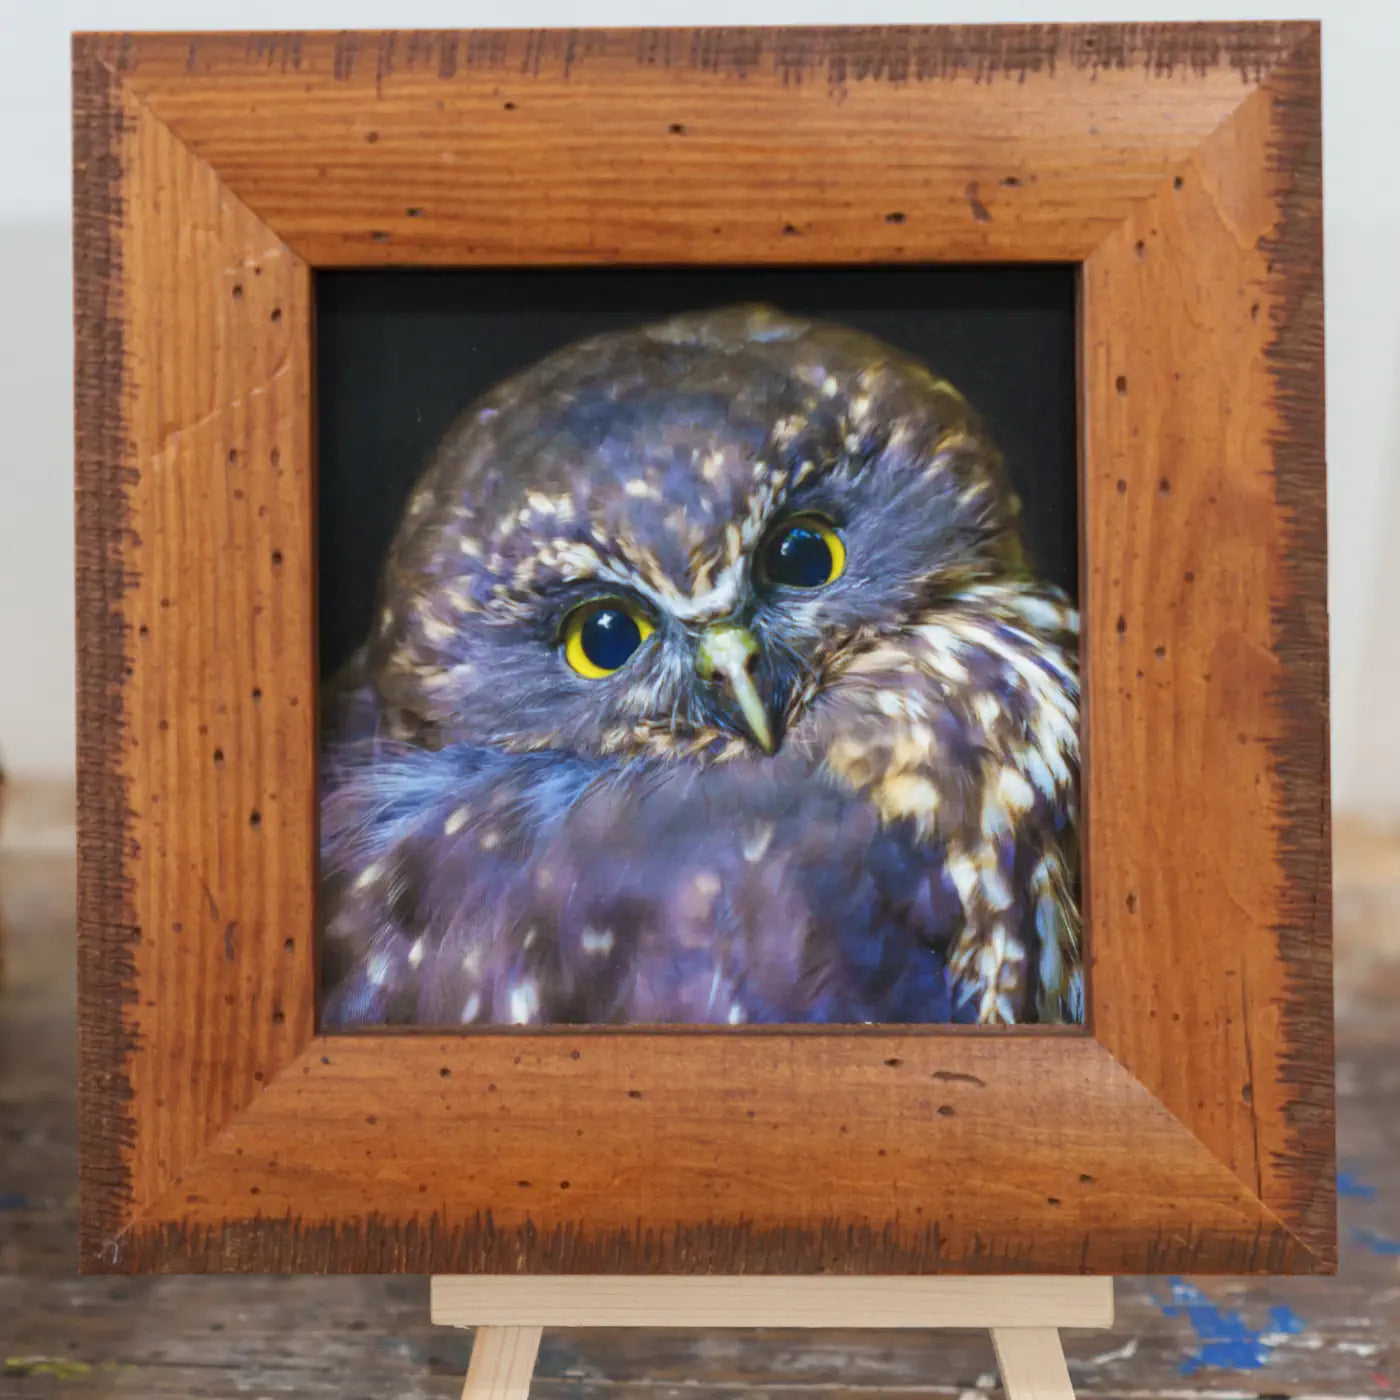 framed tinyart work of an owl